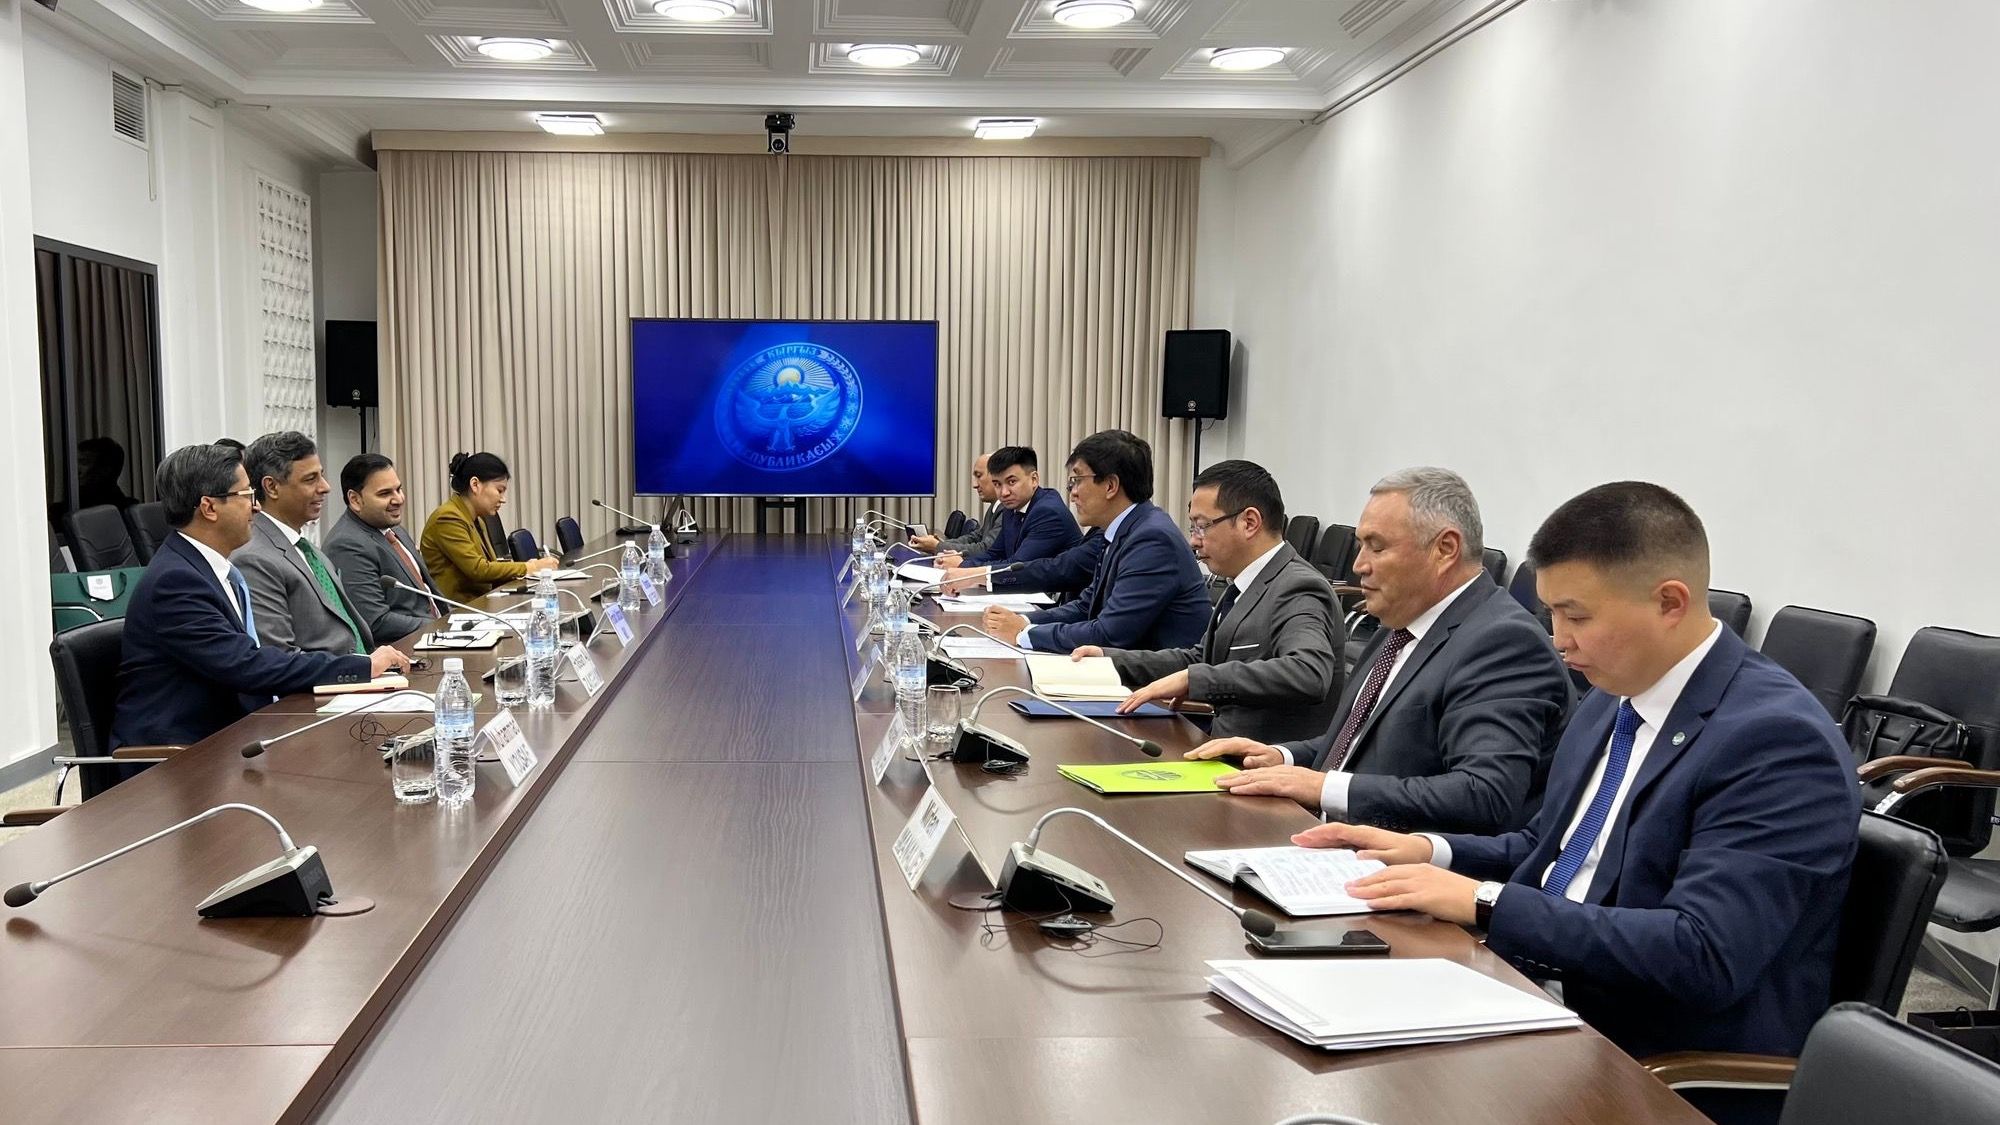 Кыргызстан предложил открыть в Бишкеке офис Национальной логистической корпорации Пакистана